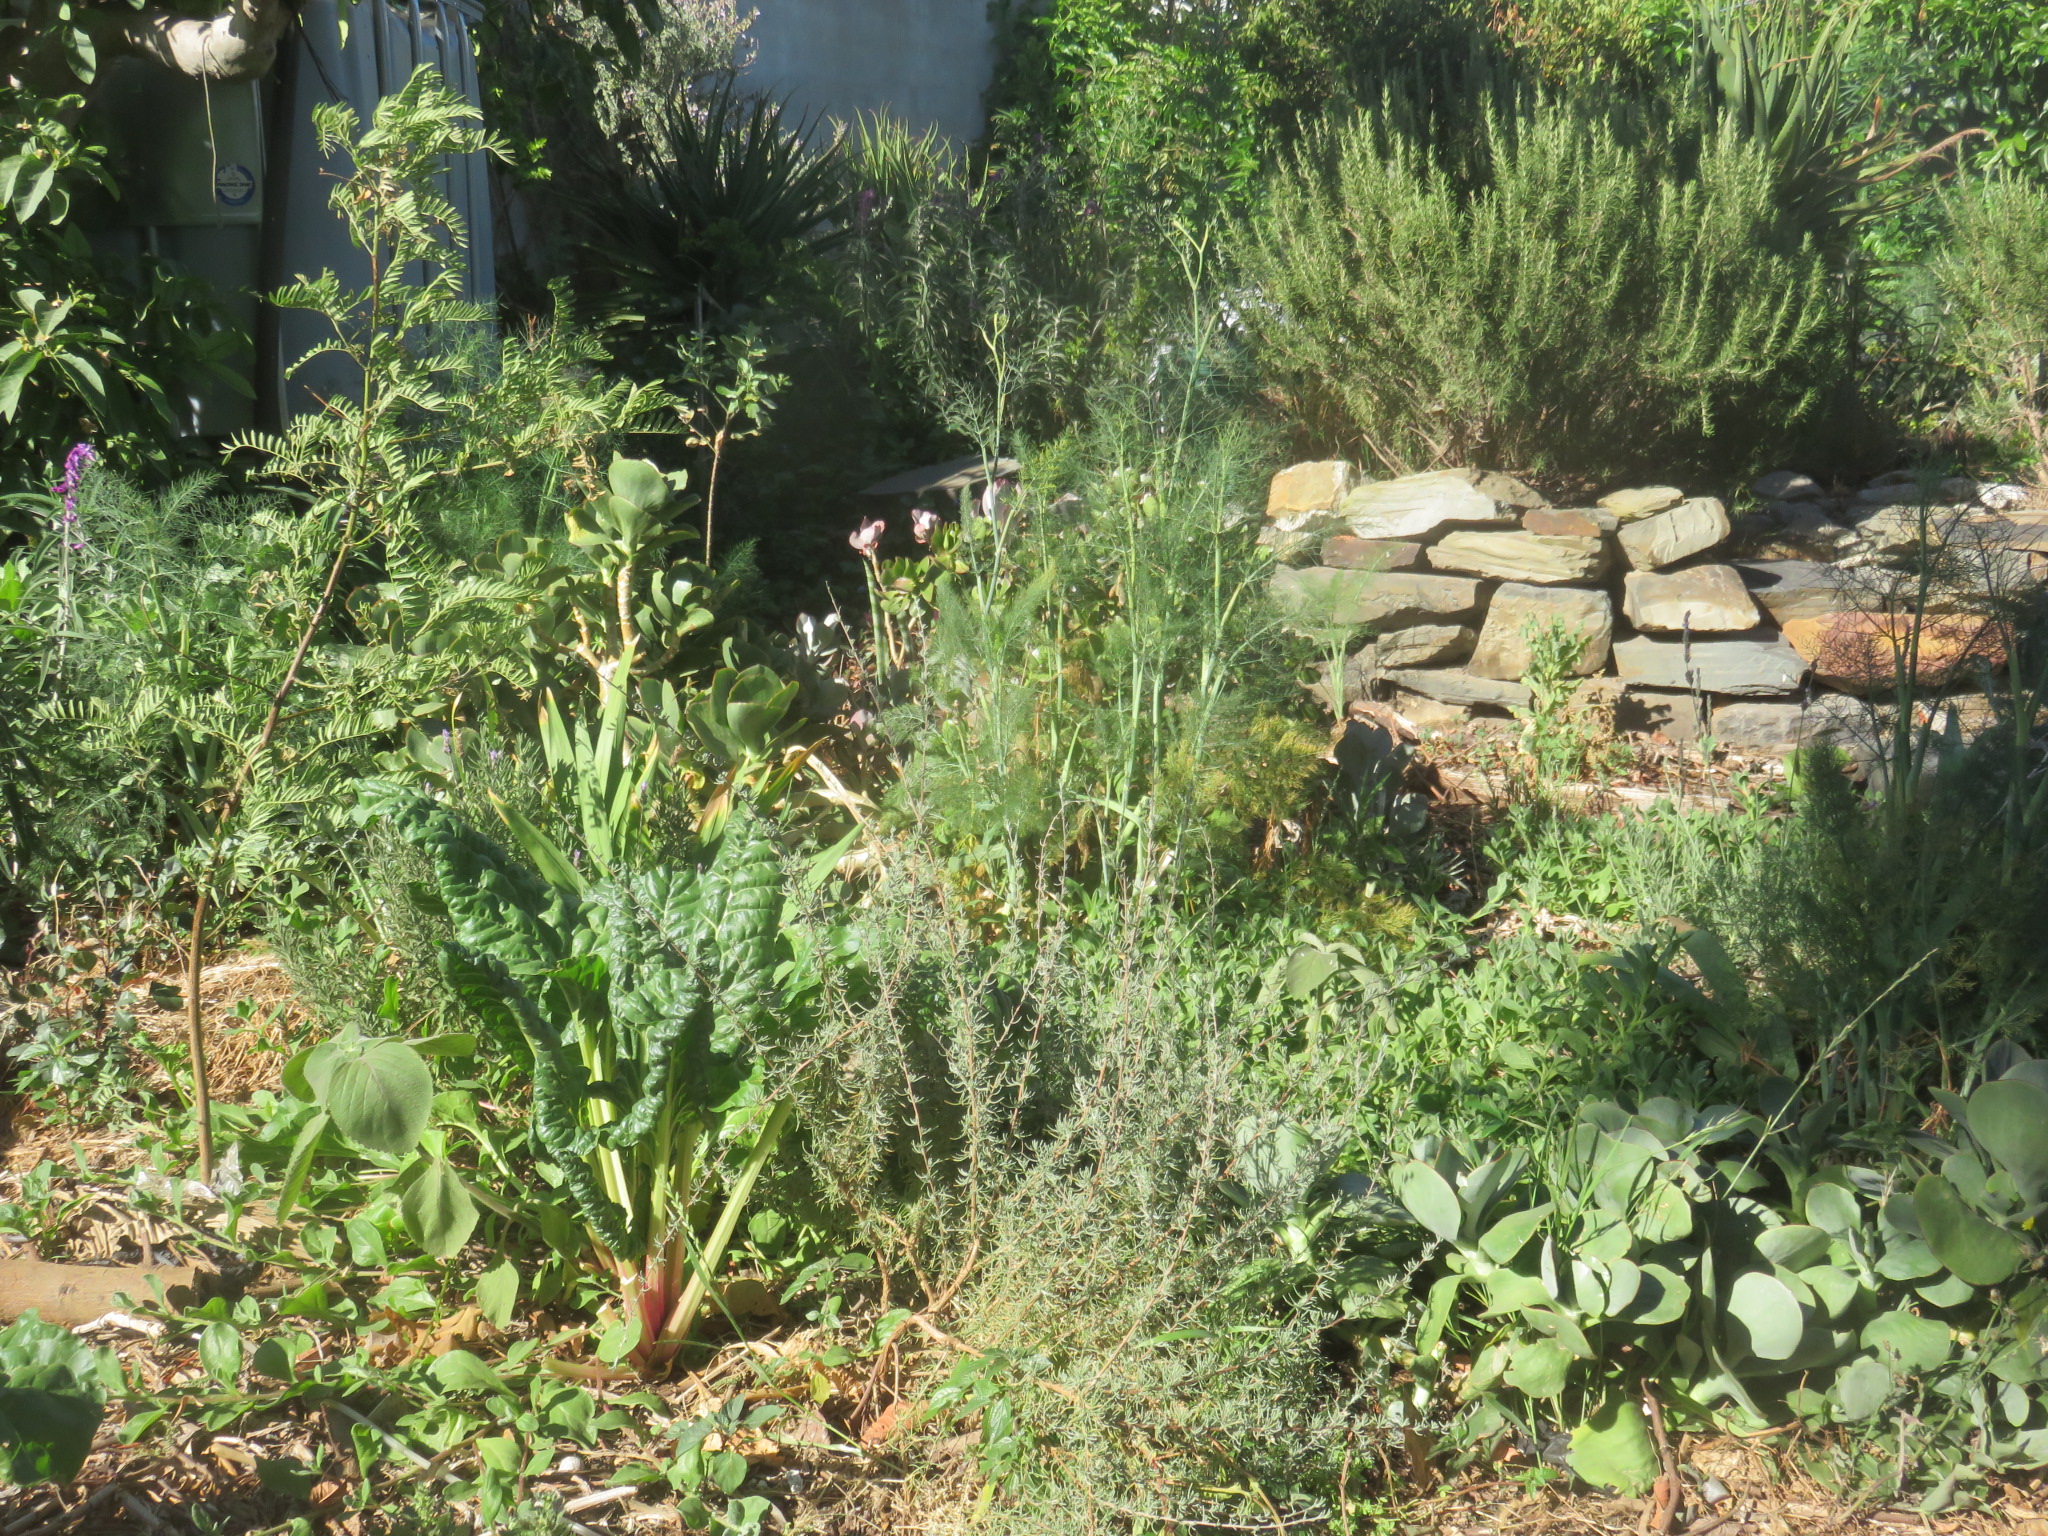 The herb garden in Goodwood.